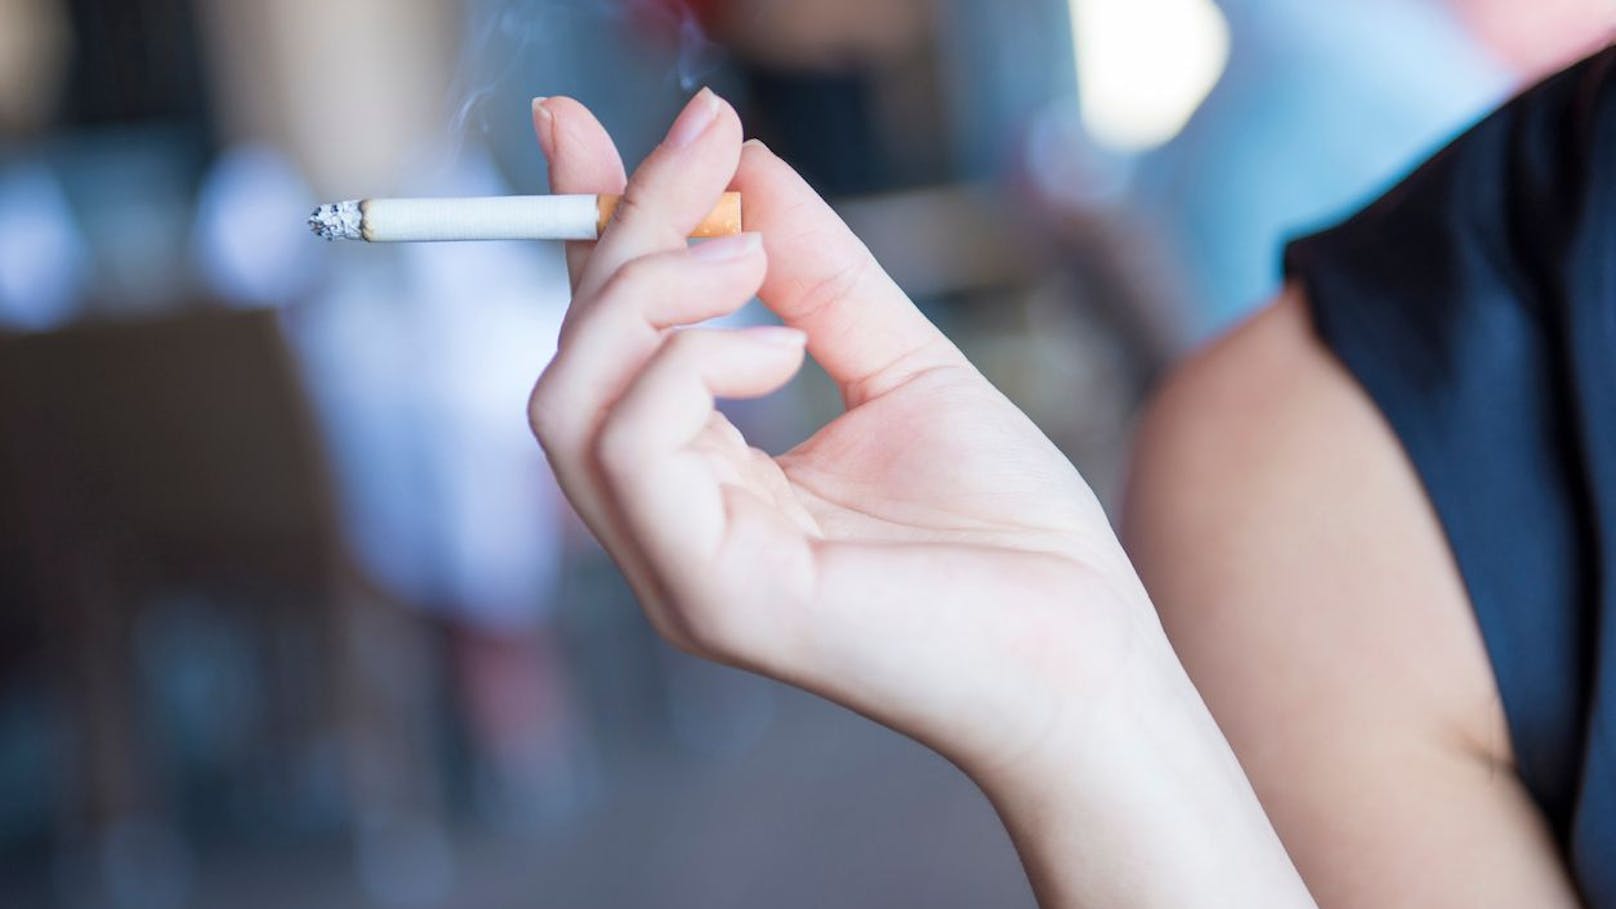 Hälfte der Raucher hat Angst vor dem Zigaretten-Tod